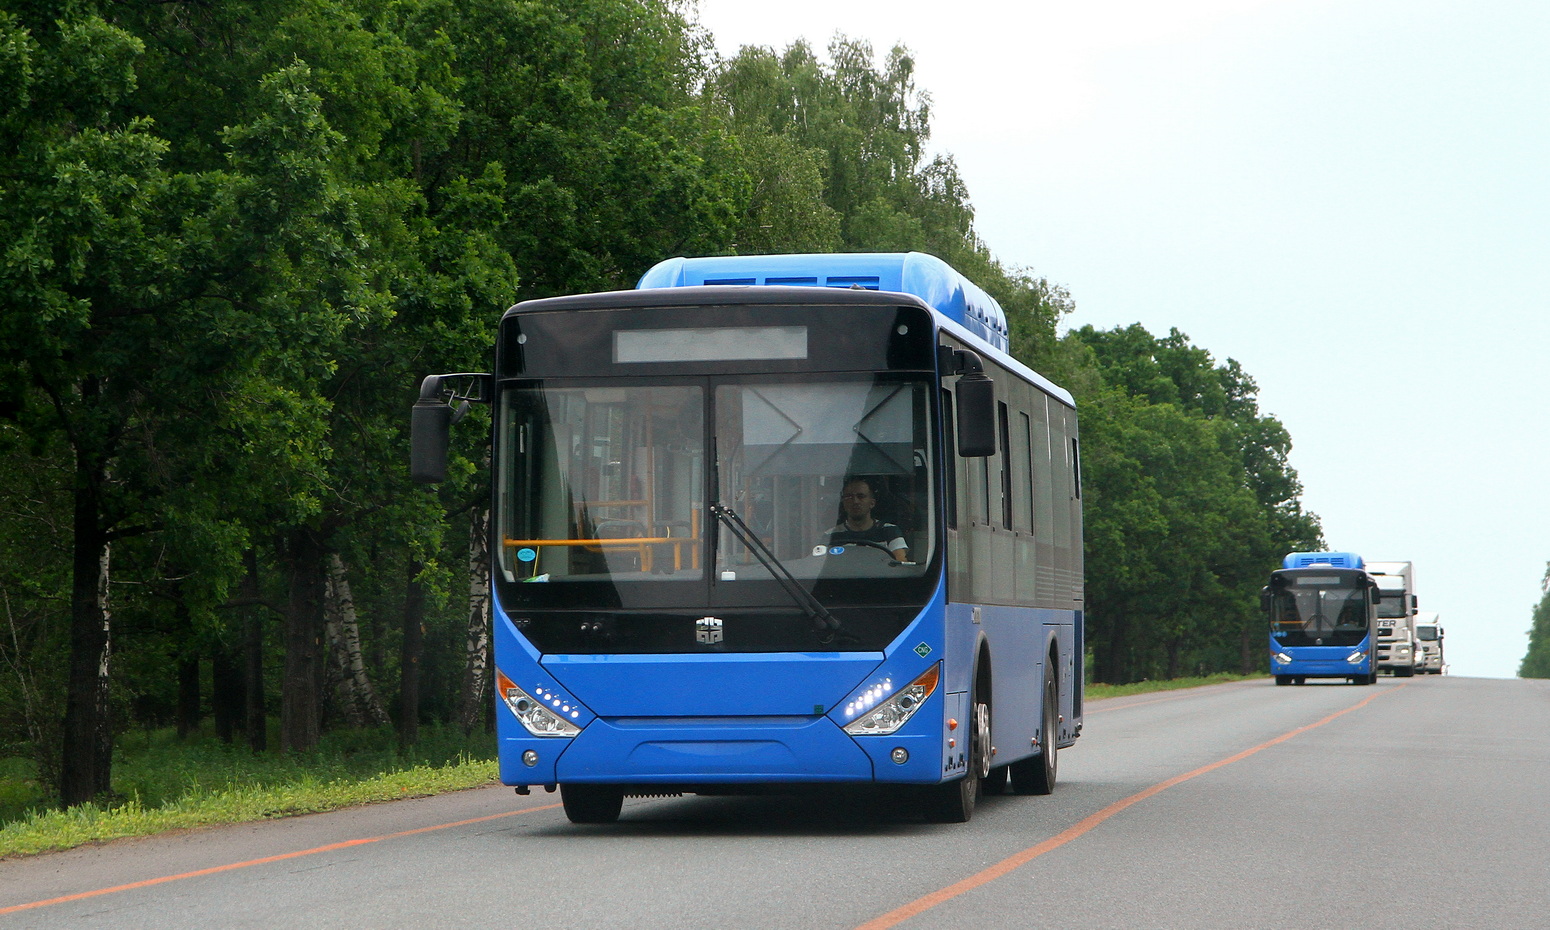 Башкортостан — Новые автобусы, автобусы без номеров